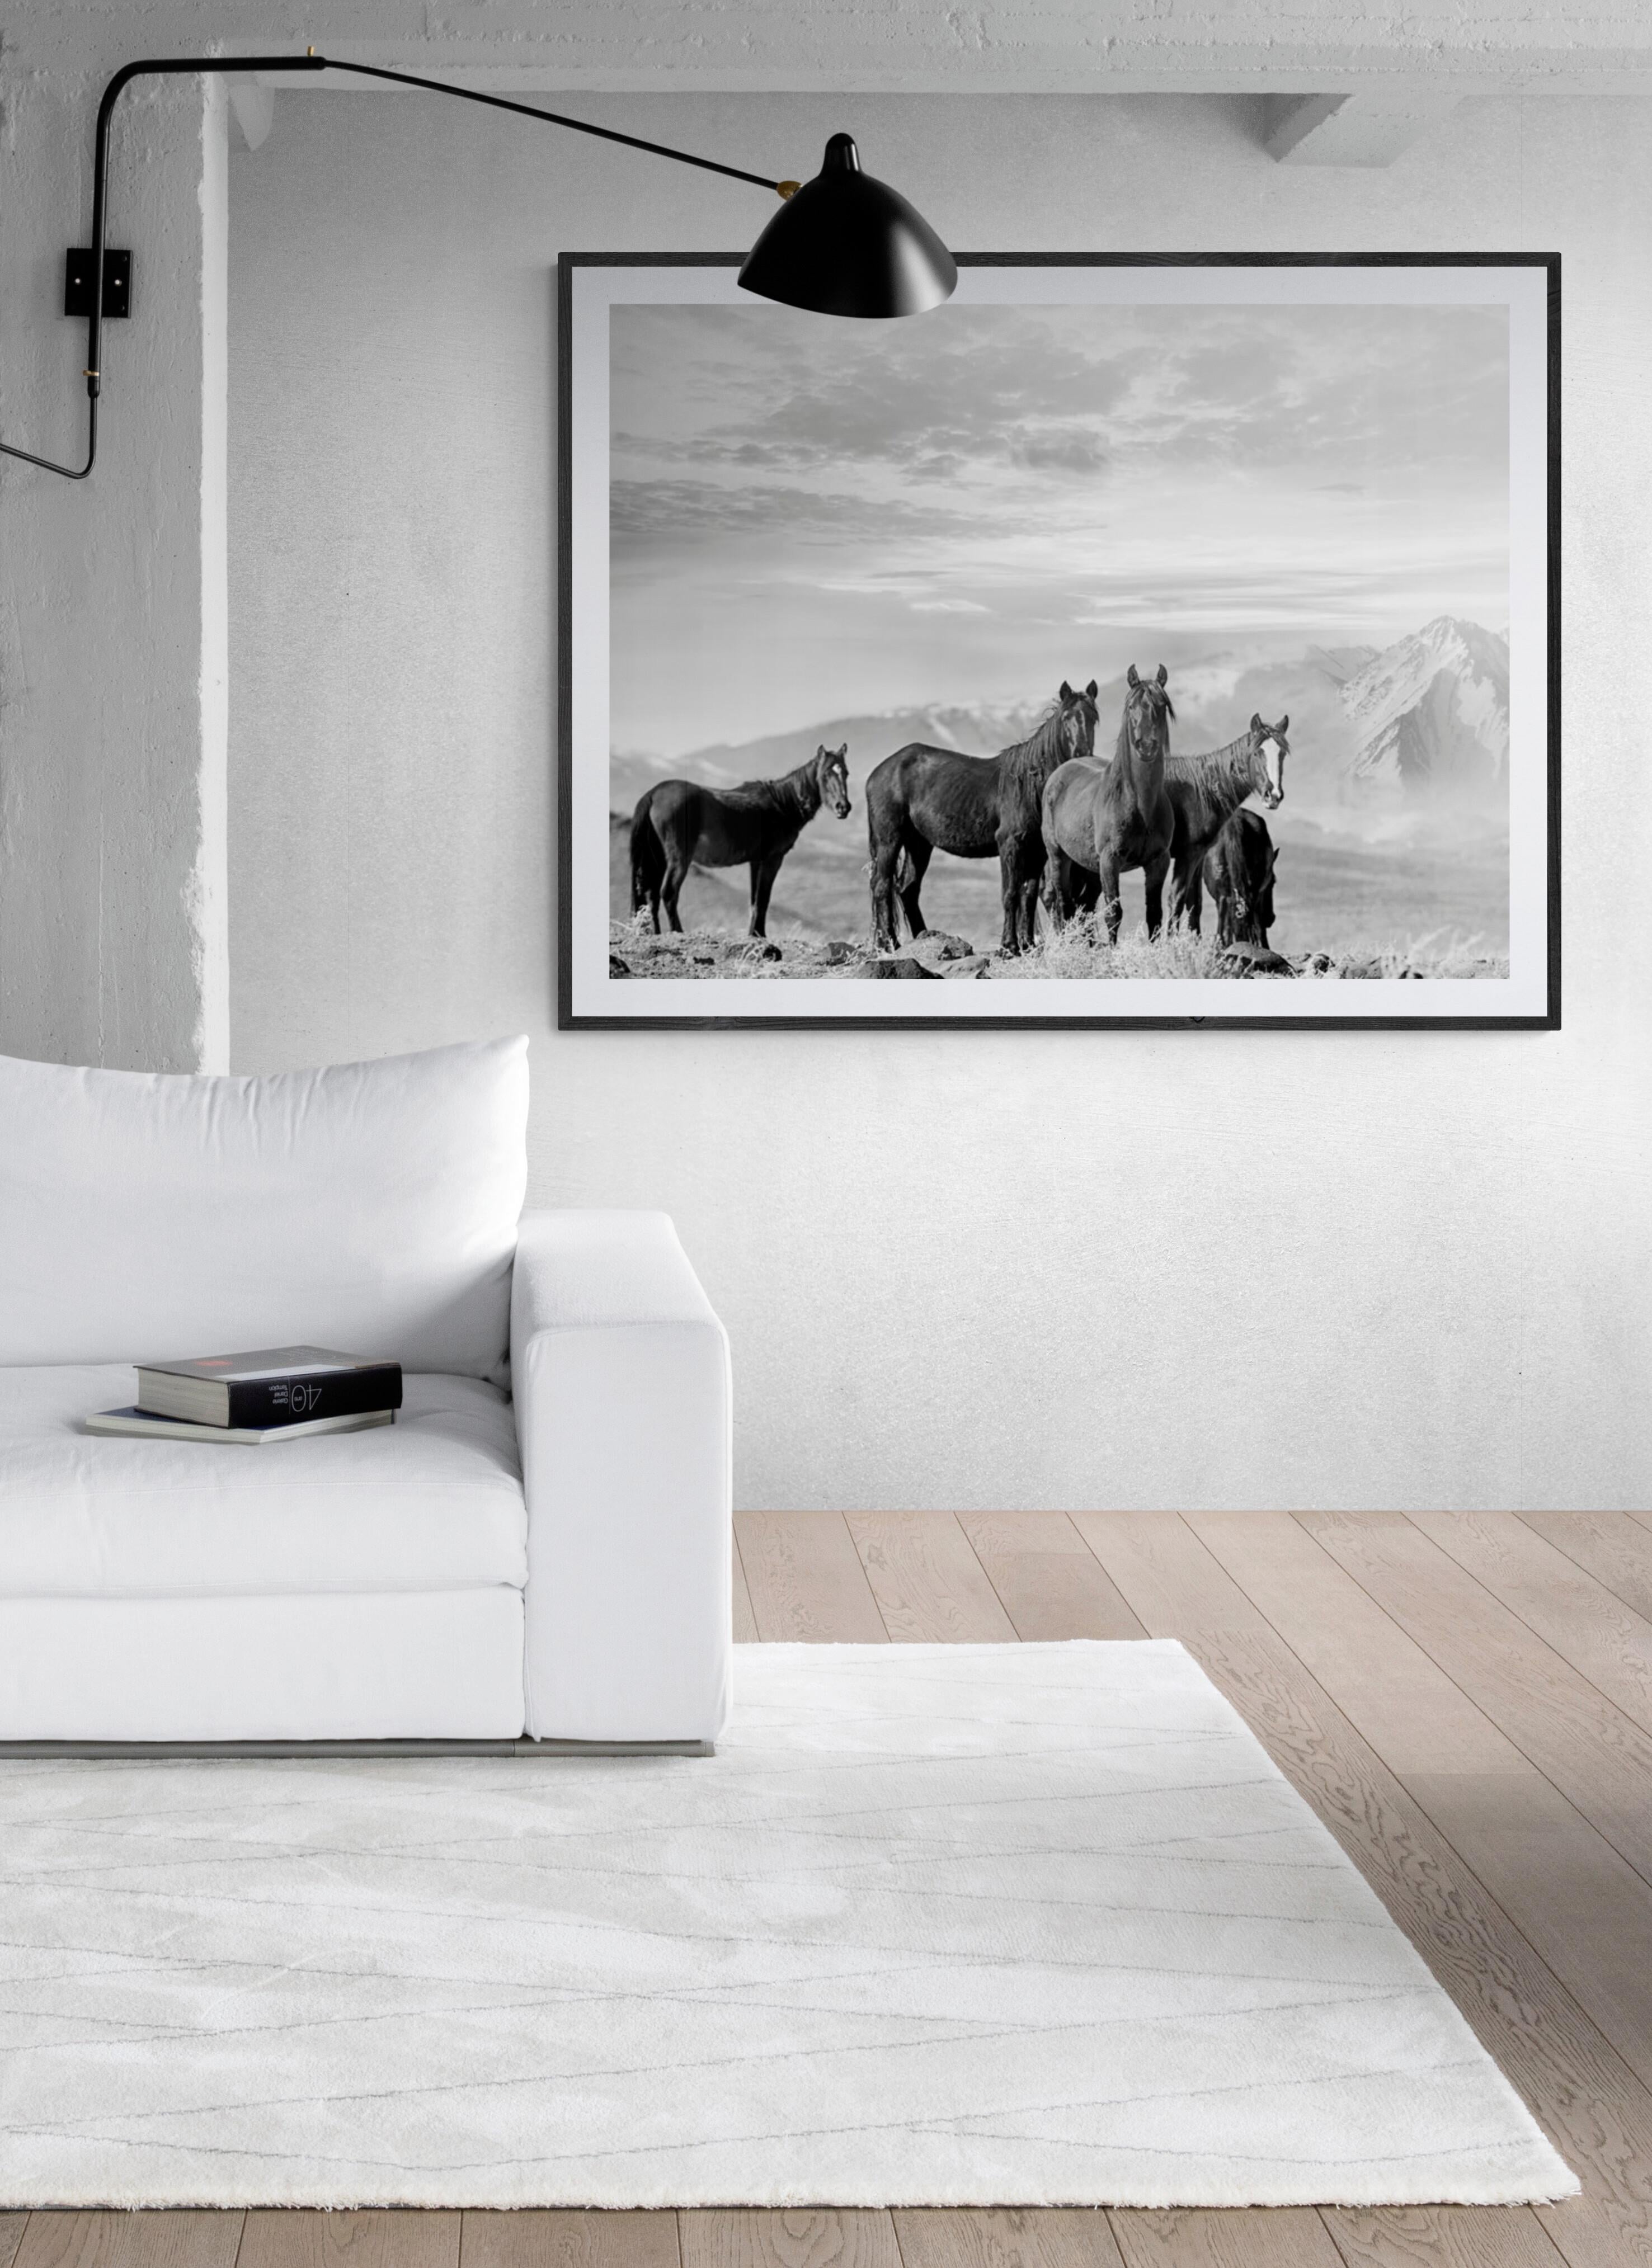 High Sierra Mustangs 36x48 Photographie en noir et blanc Chevaux sauvages, non signée - Print de Shane Russeck